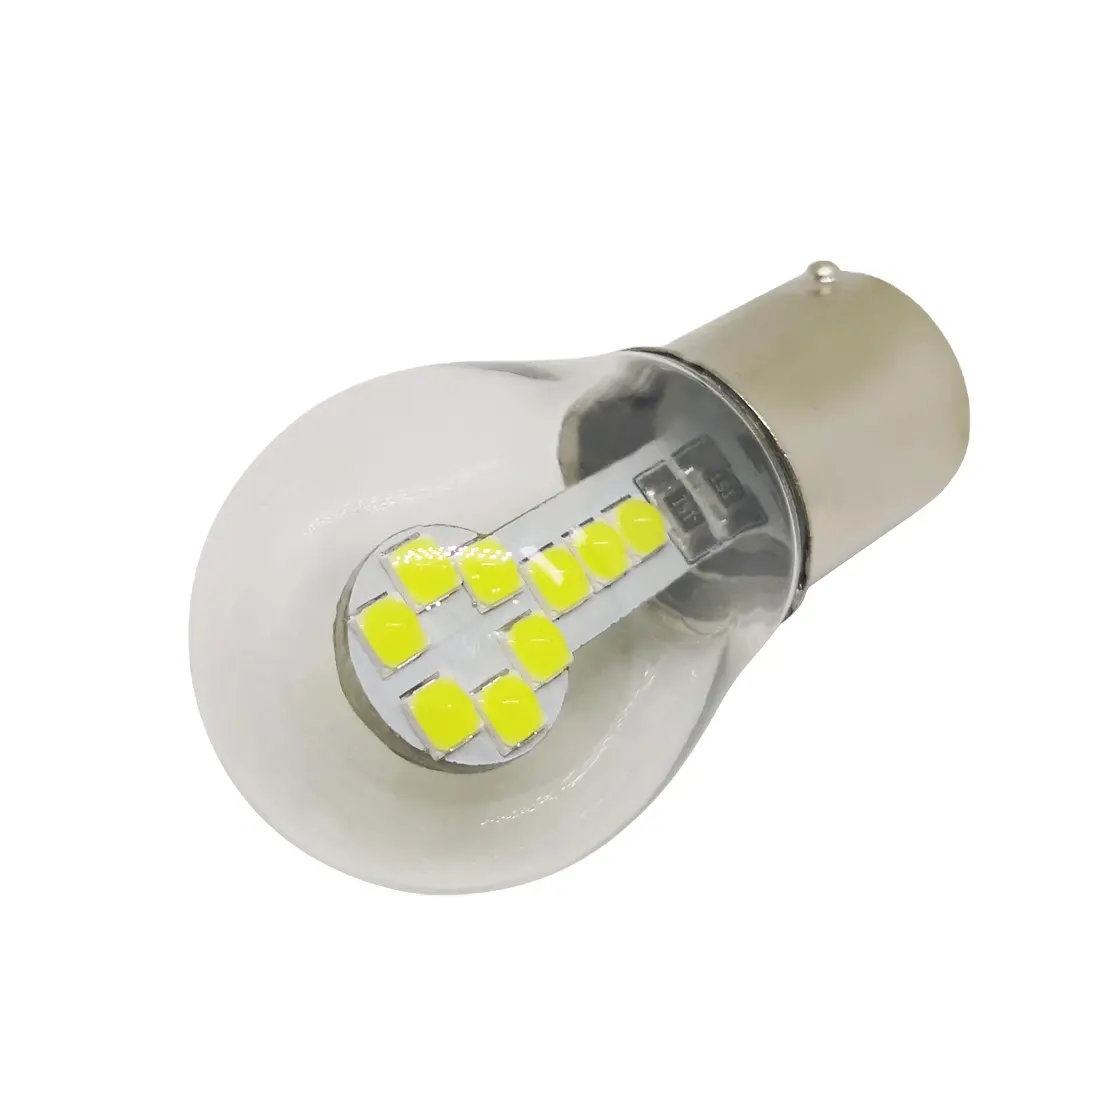 LED 자동 주차 램프 역방향 백업 조명 DRL 화이트 앰버 다시 사용자 정의 1156 Ba15s w5w LED 자동차 전구 12V 24V 유리 3030